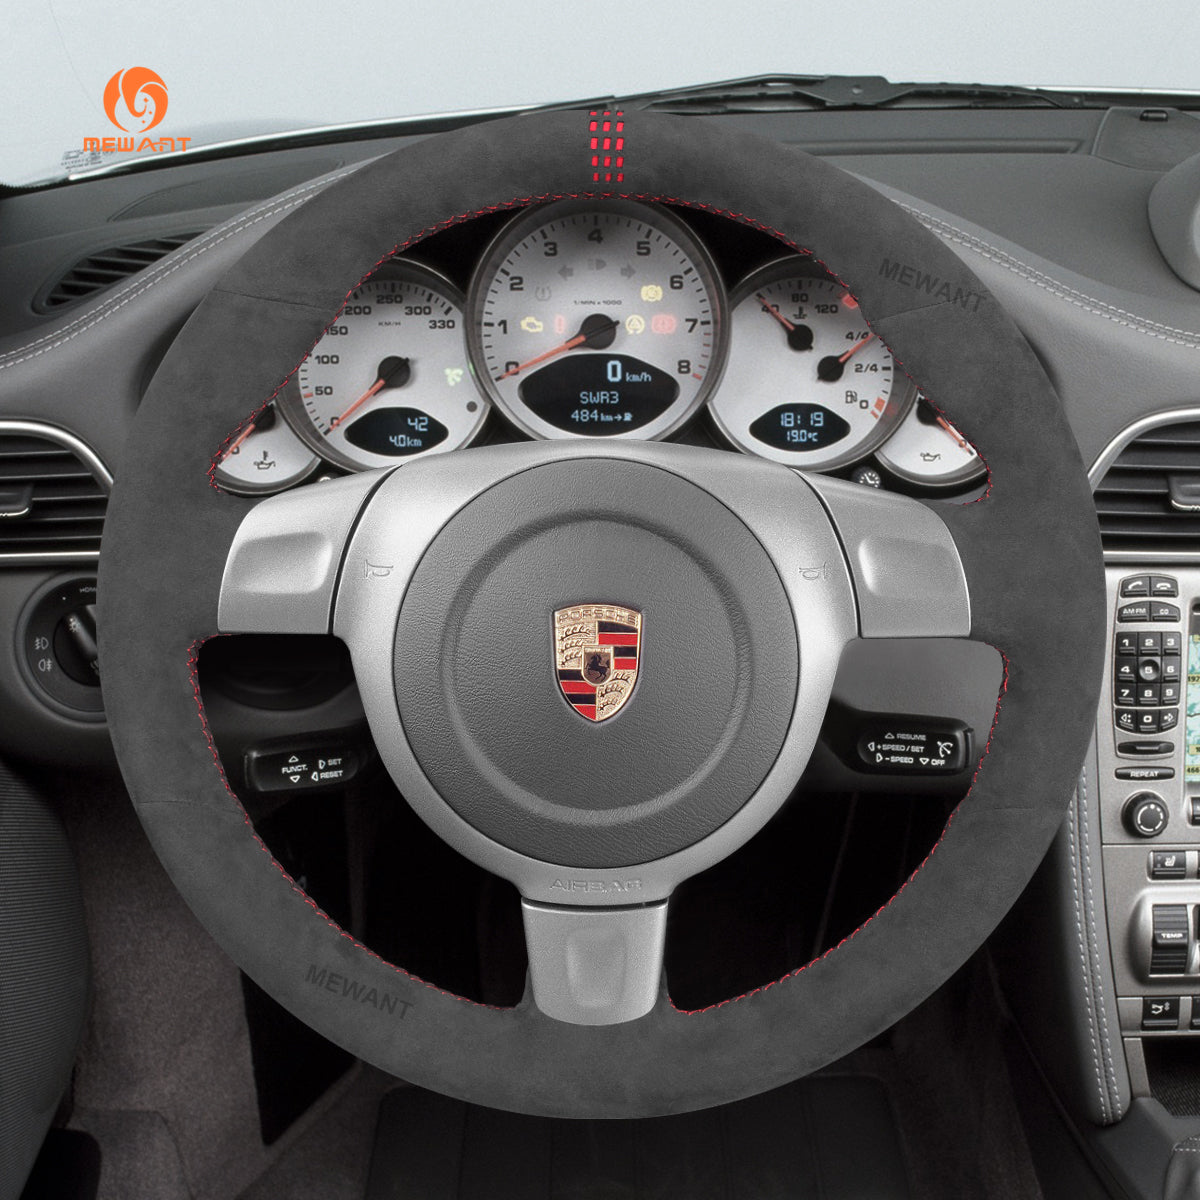 Steering Wheel Alcantara Wrap Request - Rennlist - Porsche